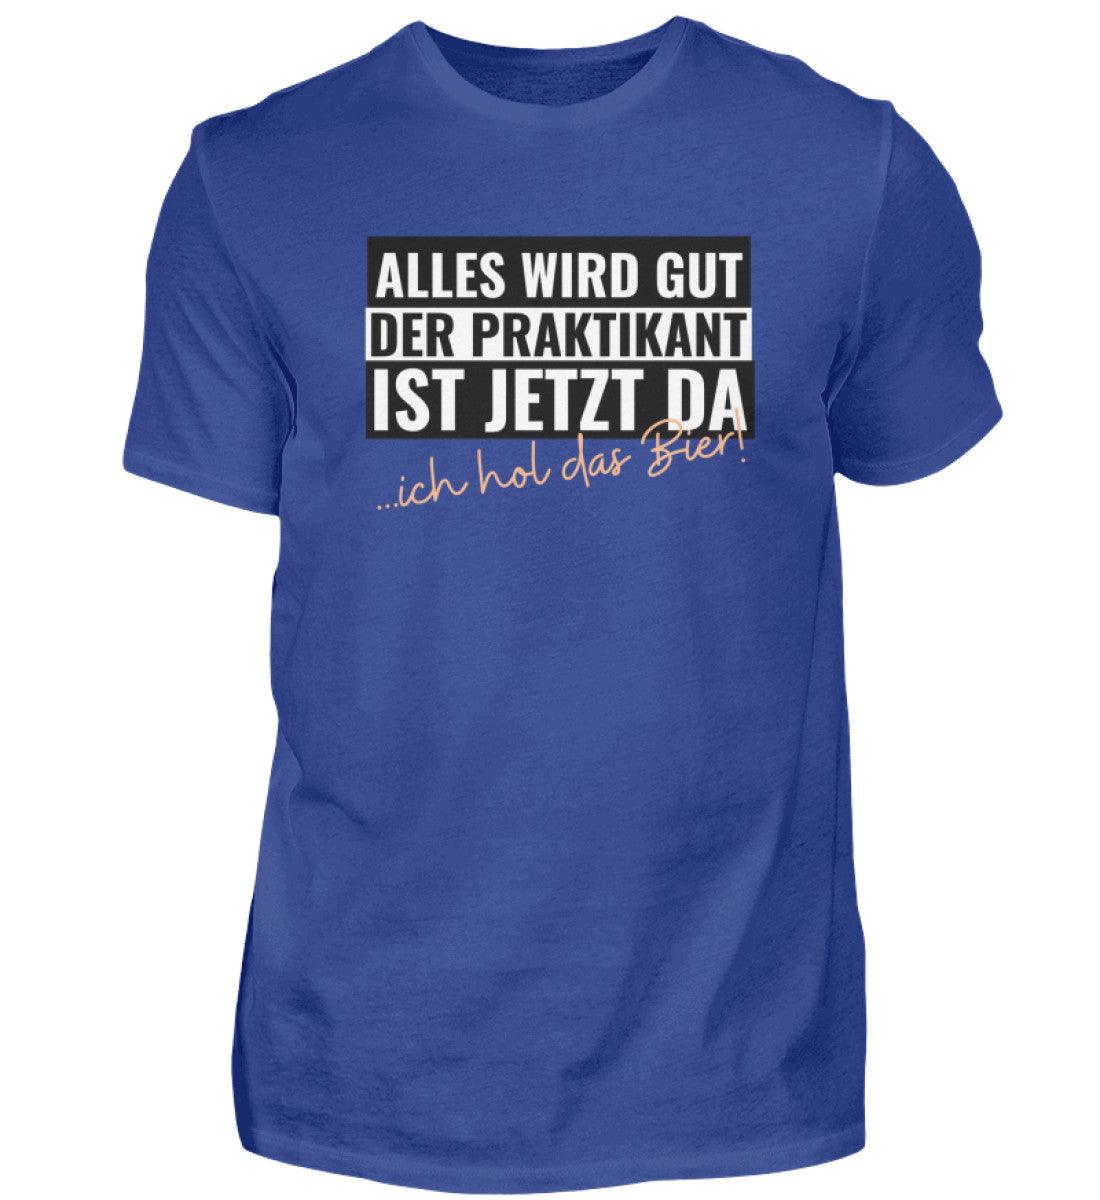 DER PRAKTIKANT - Herren Shirt - Schwarz / S